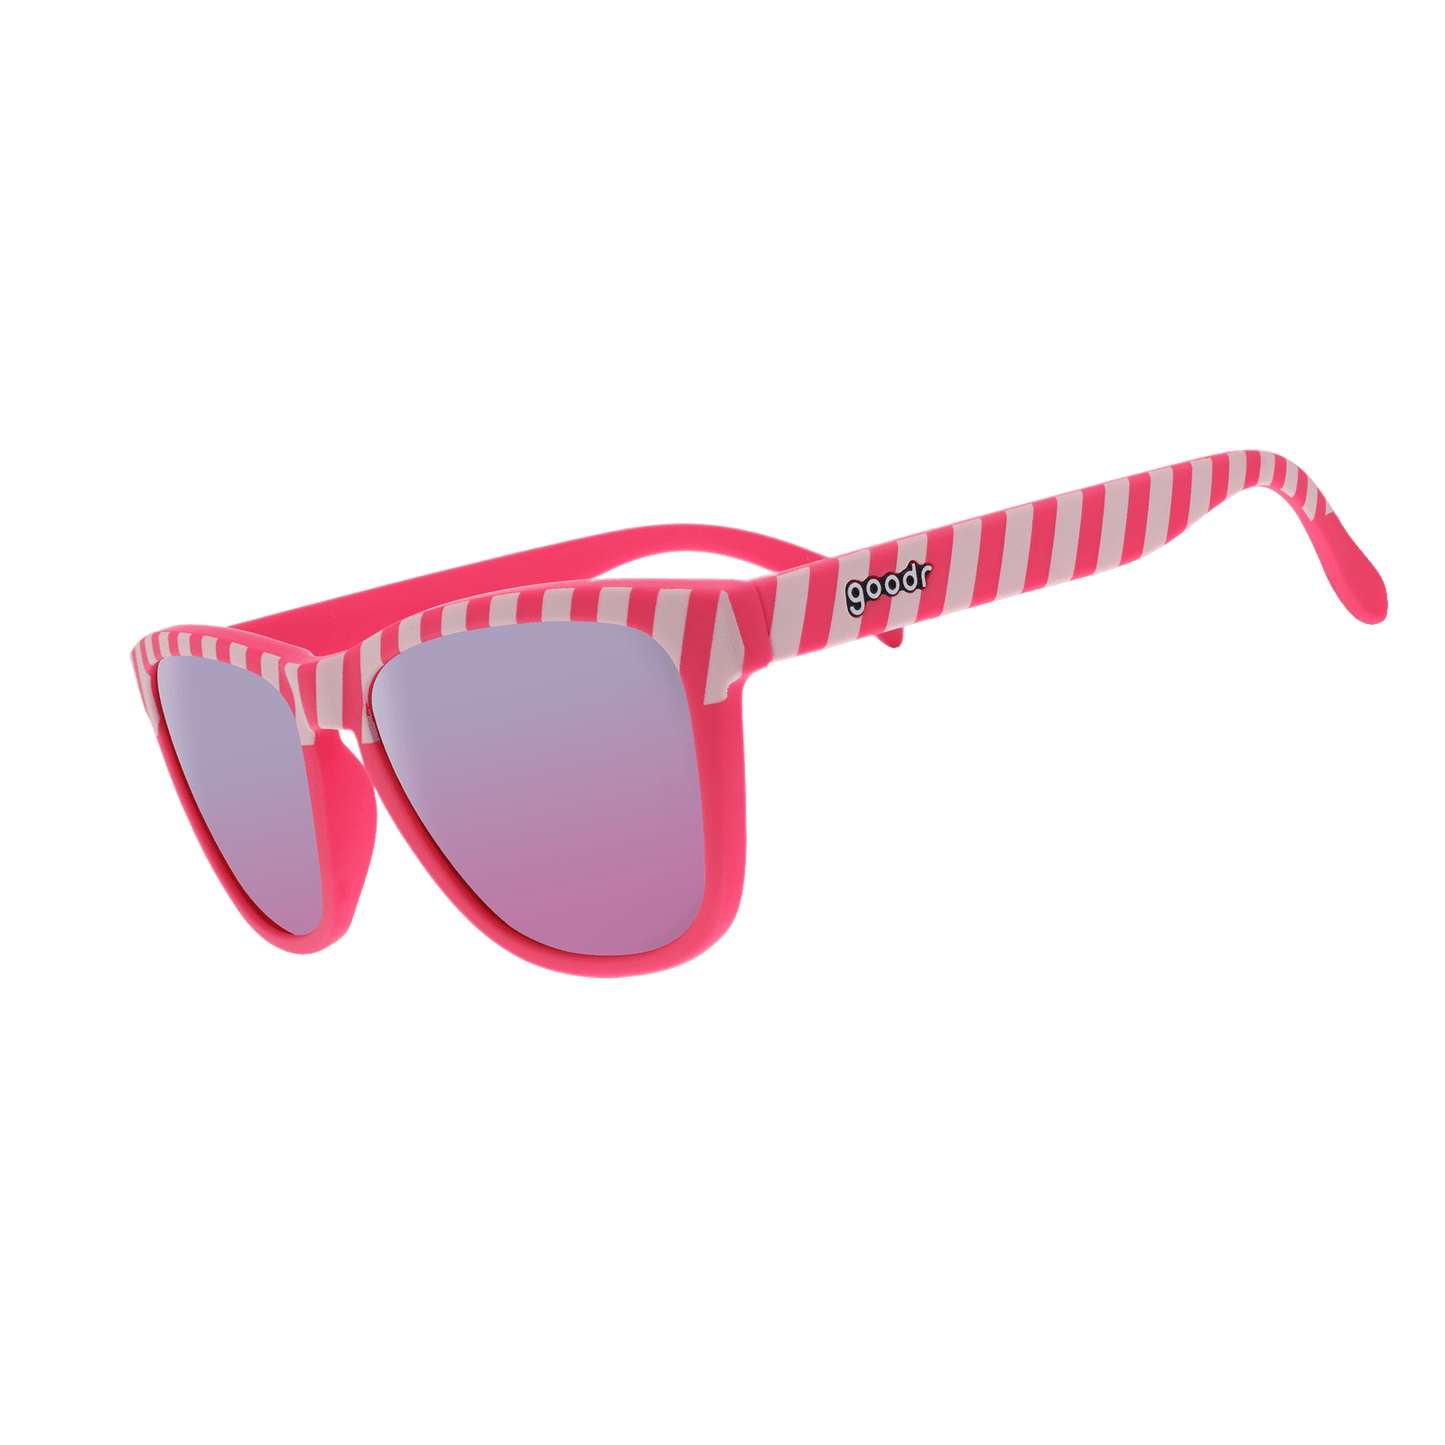 "Road Twerk Ahead” Limited OG Polarized Sunglasses Goodr